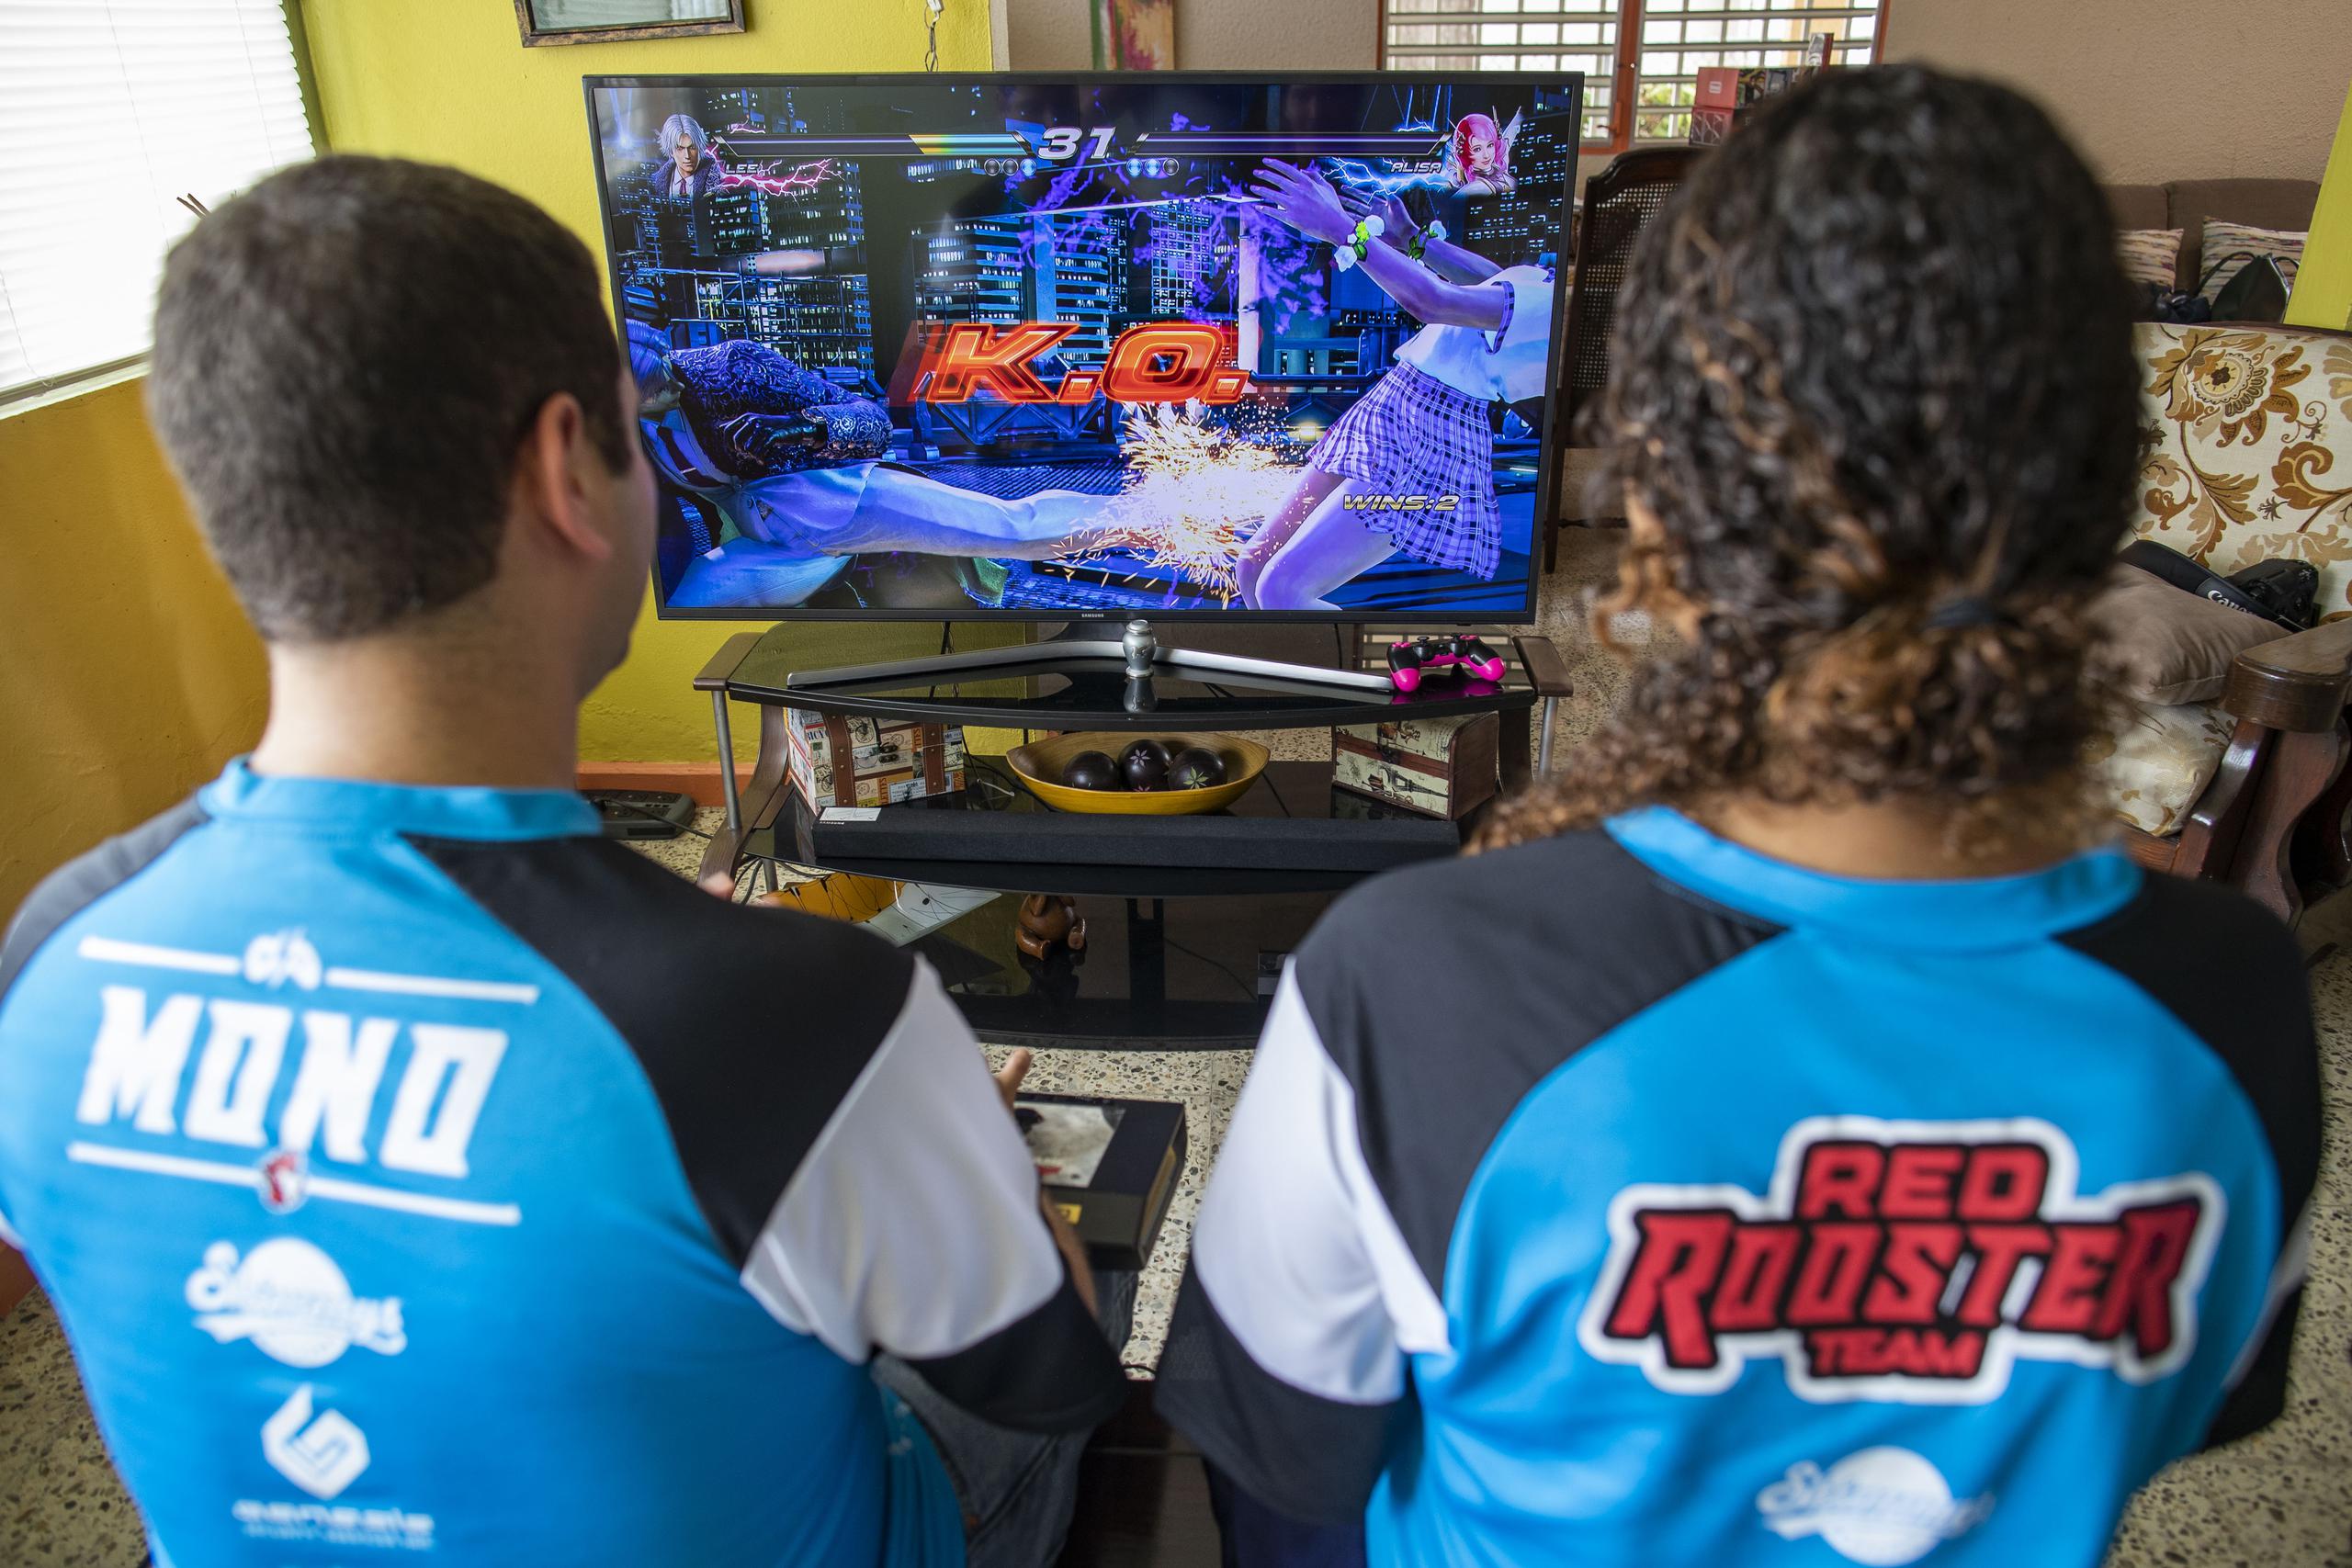 Uno estudio realizado indica que la industria de videojuegos en Puerto Rico podría traer al fisco aproximadamente $148 millones en los próximos tres años.